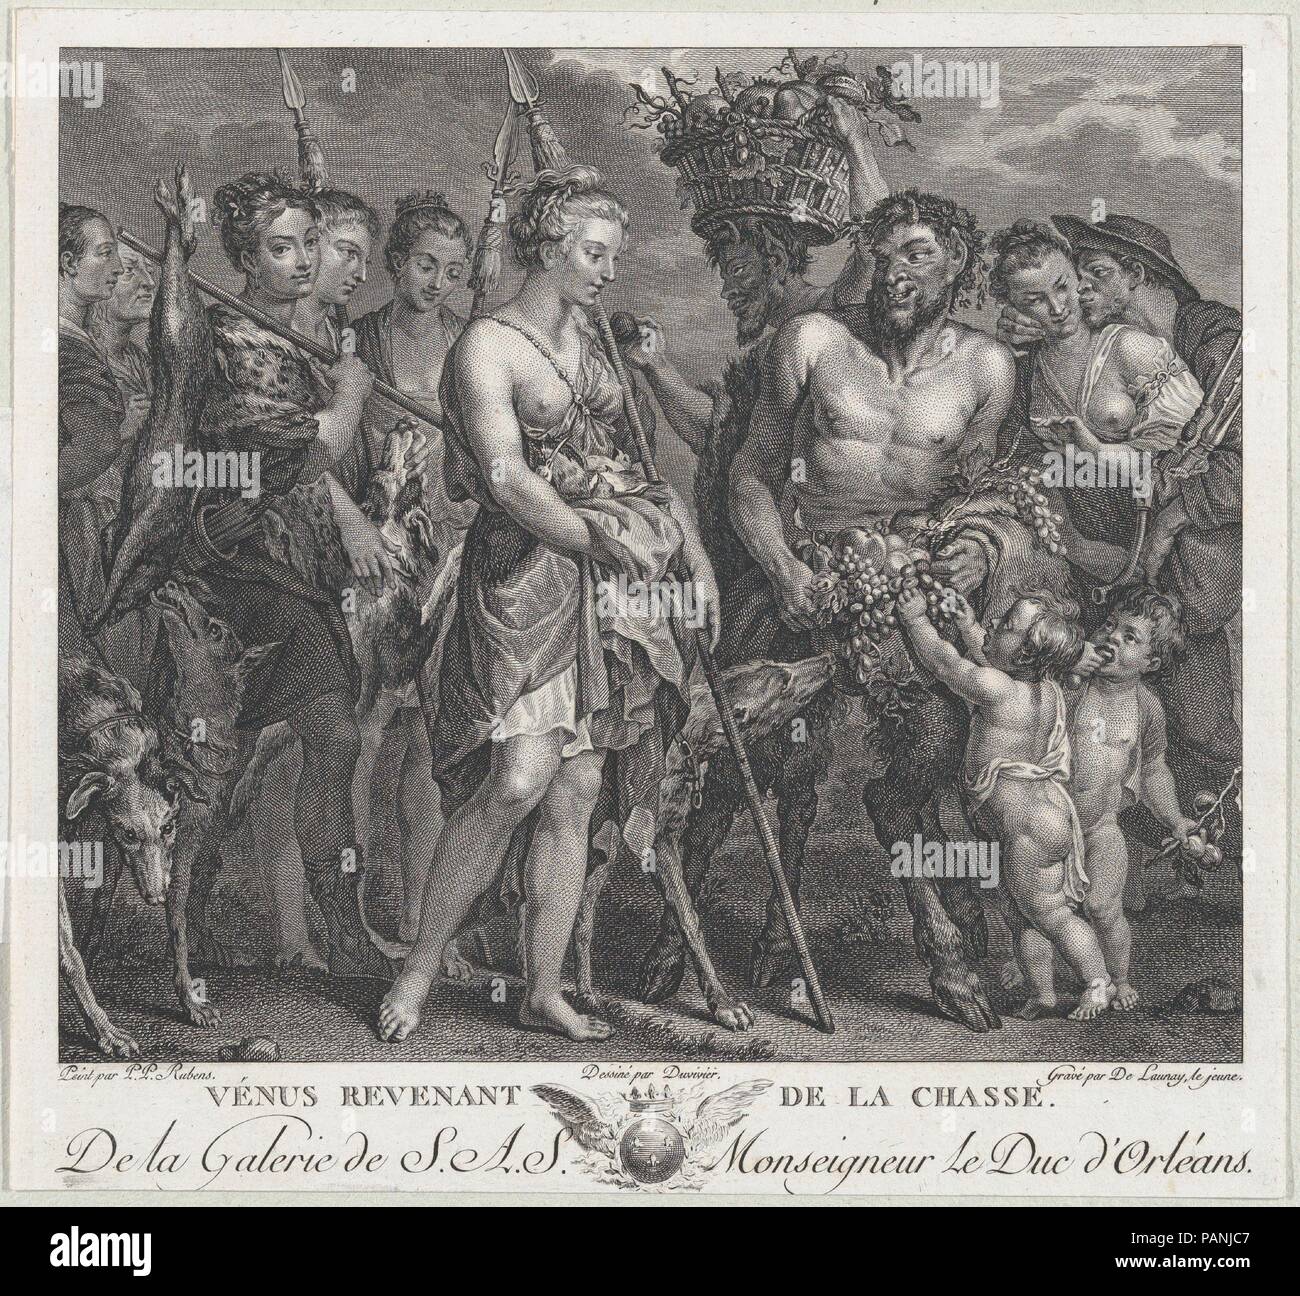 Diana di ritorno dalla chase, accompagnata da cani e le sue ninfe a sinistra due satiri a destra. Artista: dopo Peter Paul Rubens (fiammingo, Siegen 1577-1640 Anversa); Robert de launay (francese, Parigi Parigi 1749-1814); intermediario disegnatore Jean Bernard Duvivier (francese/olandese, Bruges 1762-1837 Paris). Dimensioni: Immagine: 6 15/16 × 8 1/16 in. (17,6 × 20,5 cm) Foglio (trimmed): 8 1/16 × 8 11/16 in. (20,5 × 22,1 cm). Serie/Portfolio: Galerie du Palais Royal. Data: ca. 1808. La stampa viene erroneamente chiamato "Venus revenant de la chasse' (Venere di ritorno da chase) sulla piastra. Museo: Metropol Foto Stock